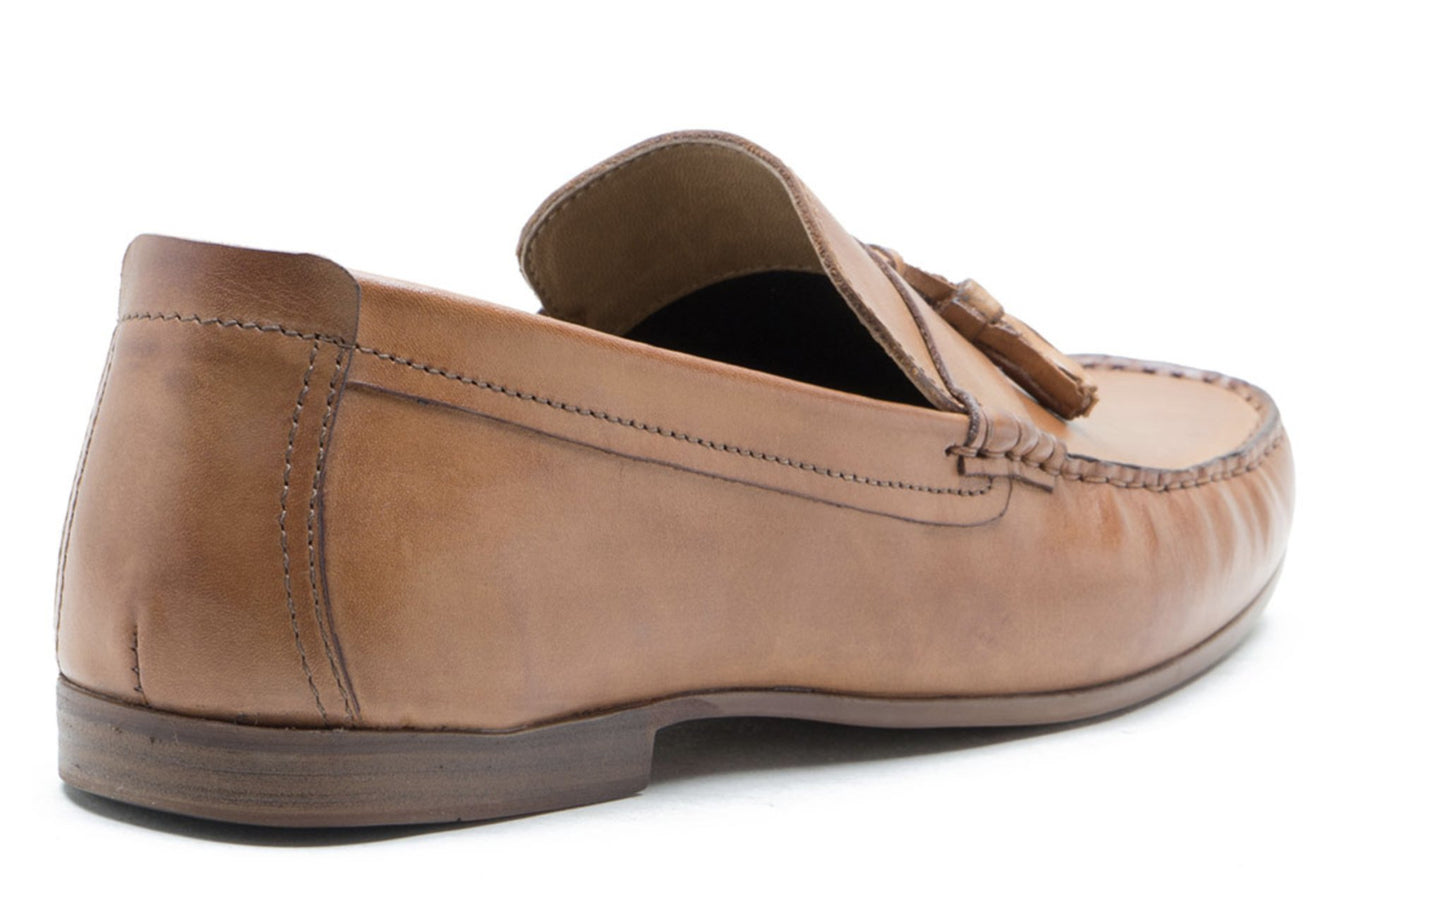 Men's Leather Moccasins Slip Shoes Tan - Elav - GLS Clothing